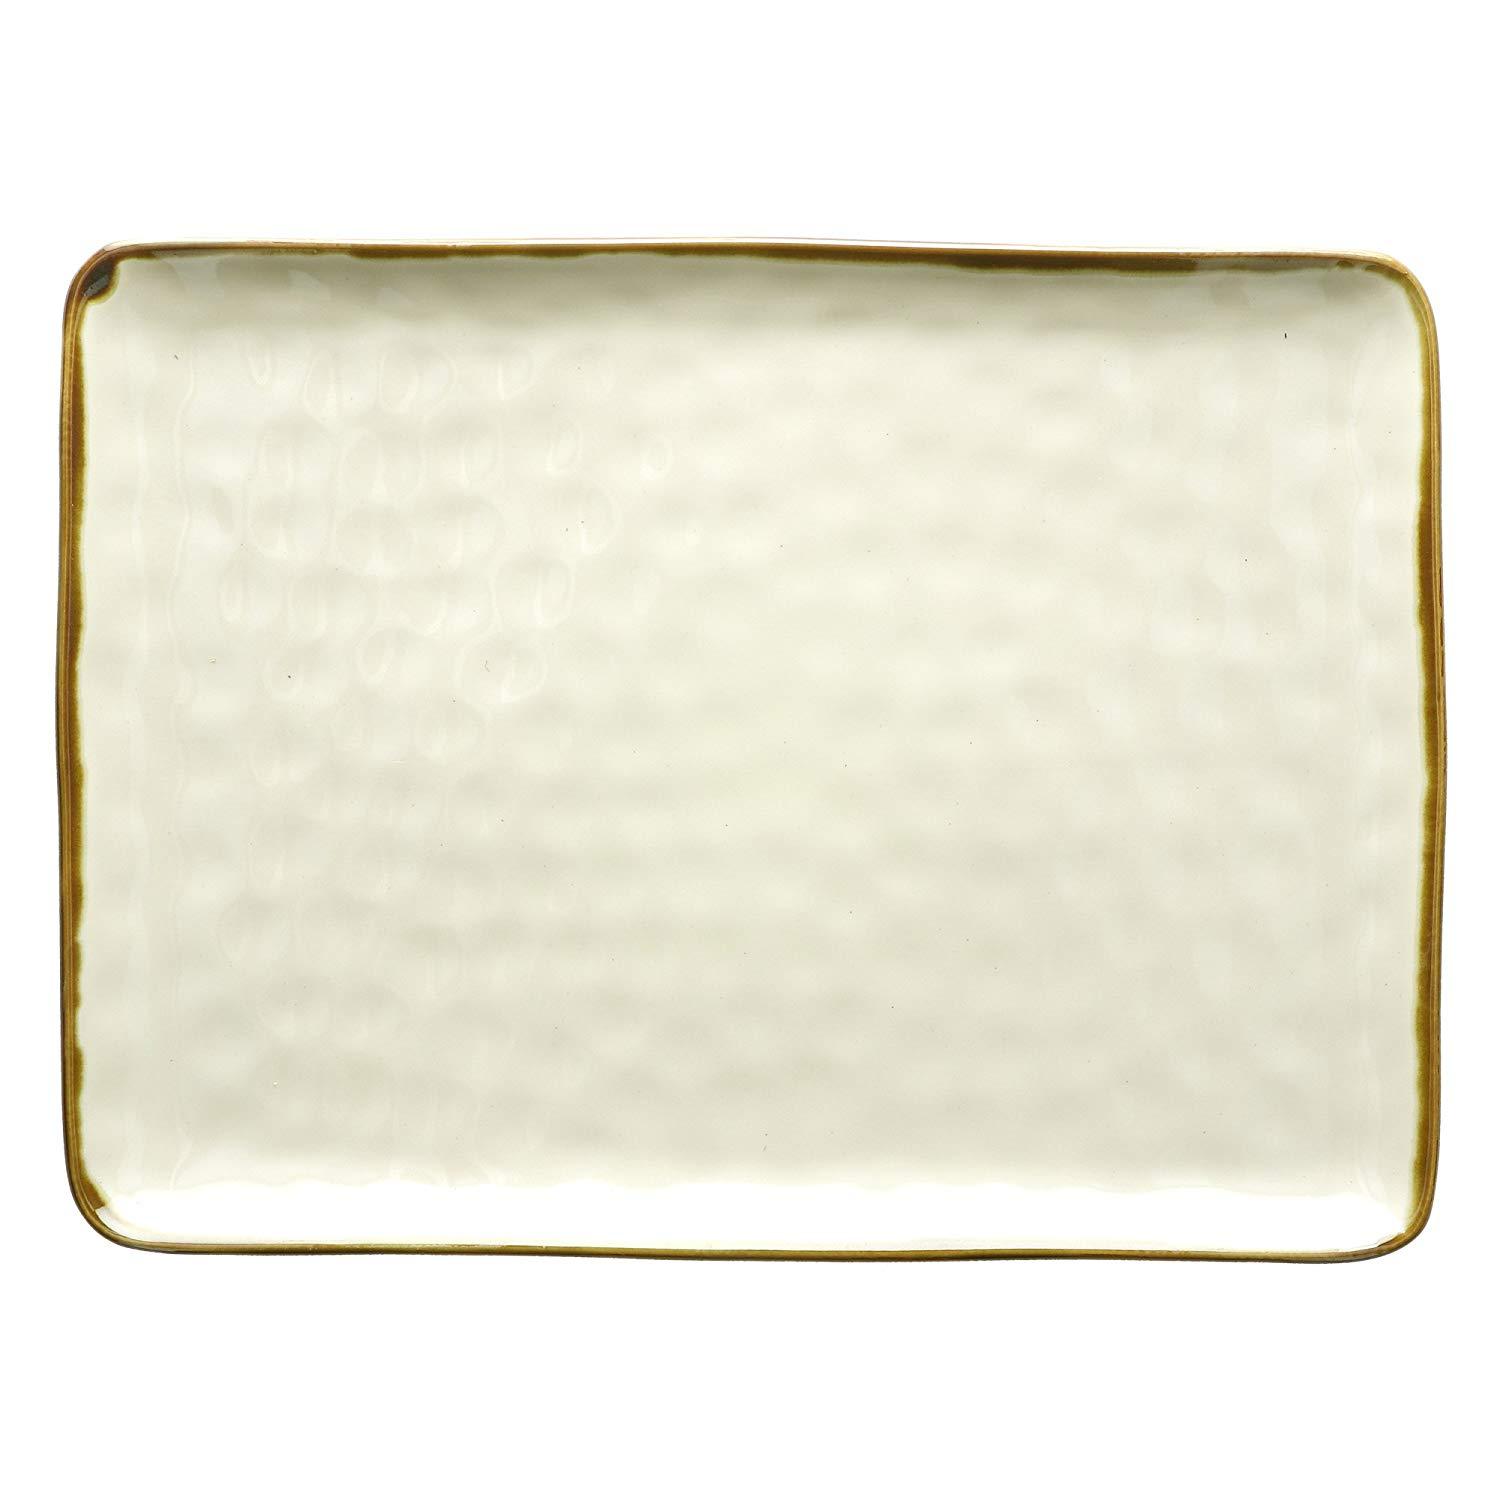 Piatto rettangolare vassoio 36 x 26,5 cm colore Avorio bianco panna shabby chic - Dolci pensieri gift